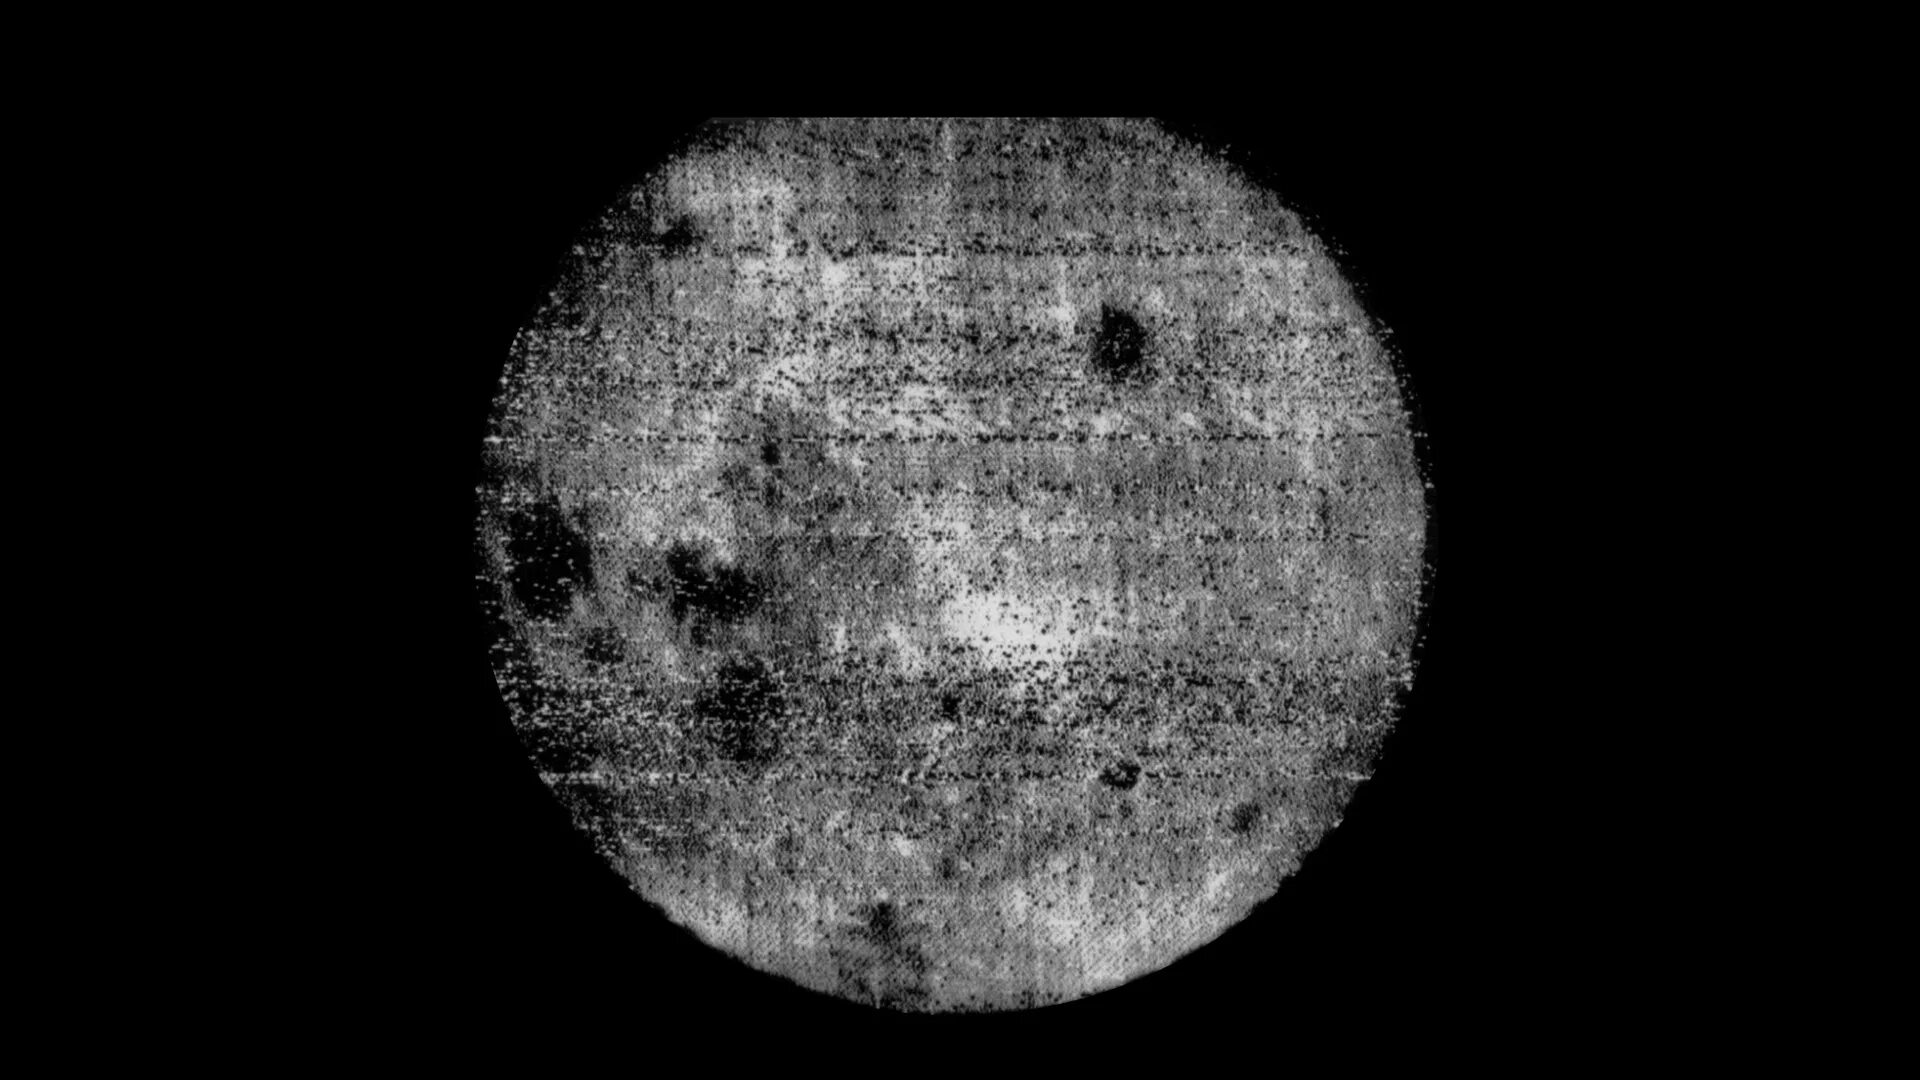 Снимок обратной стороны Луны 1959. Луна 3 снимки обратной стороны Луны. 1959 Снимки Обратная сторона Луны. Фото обратной стороны Луны 1959.